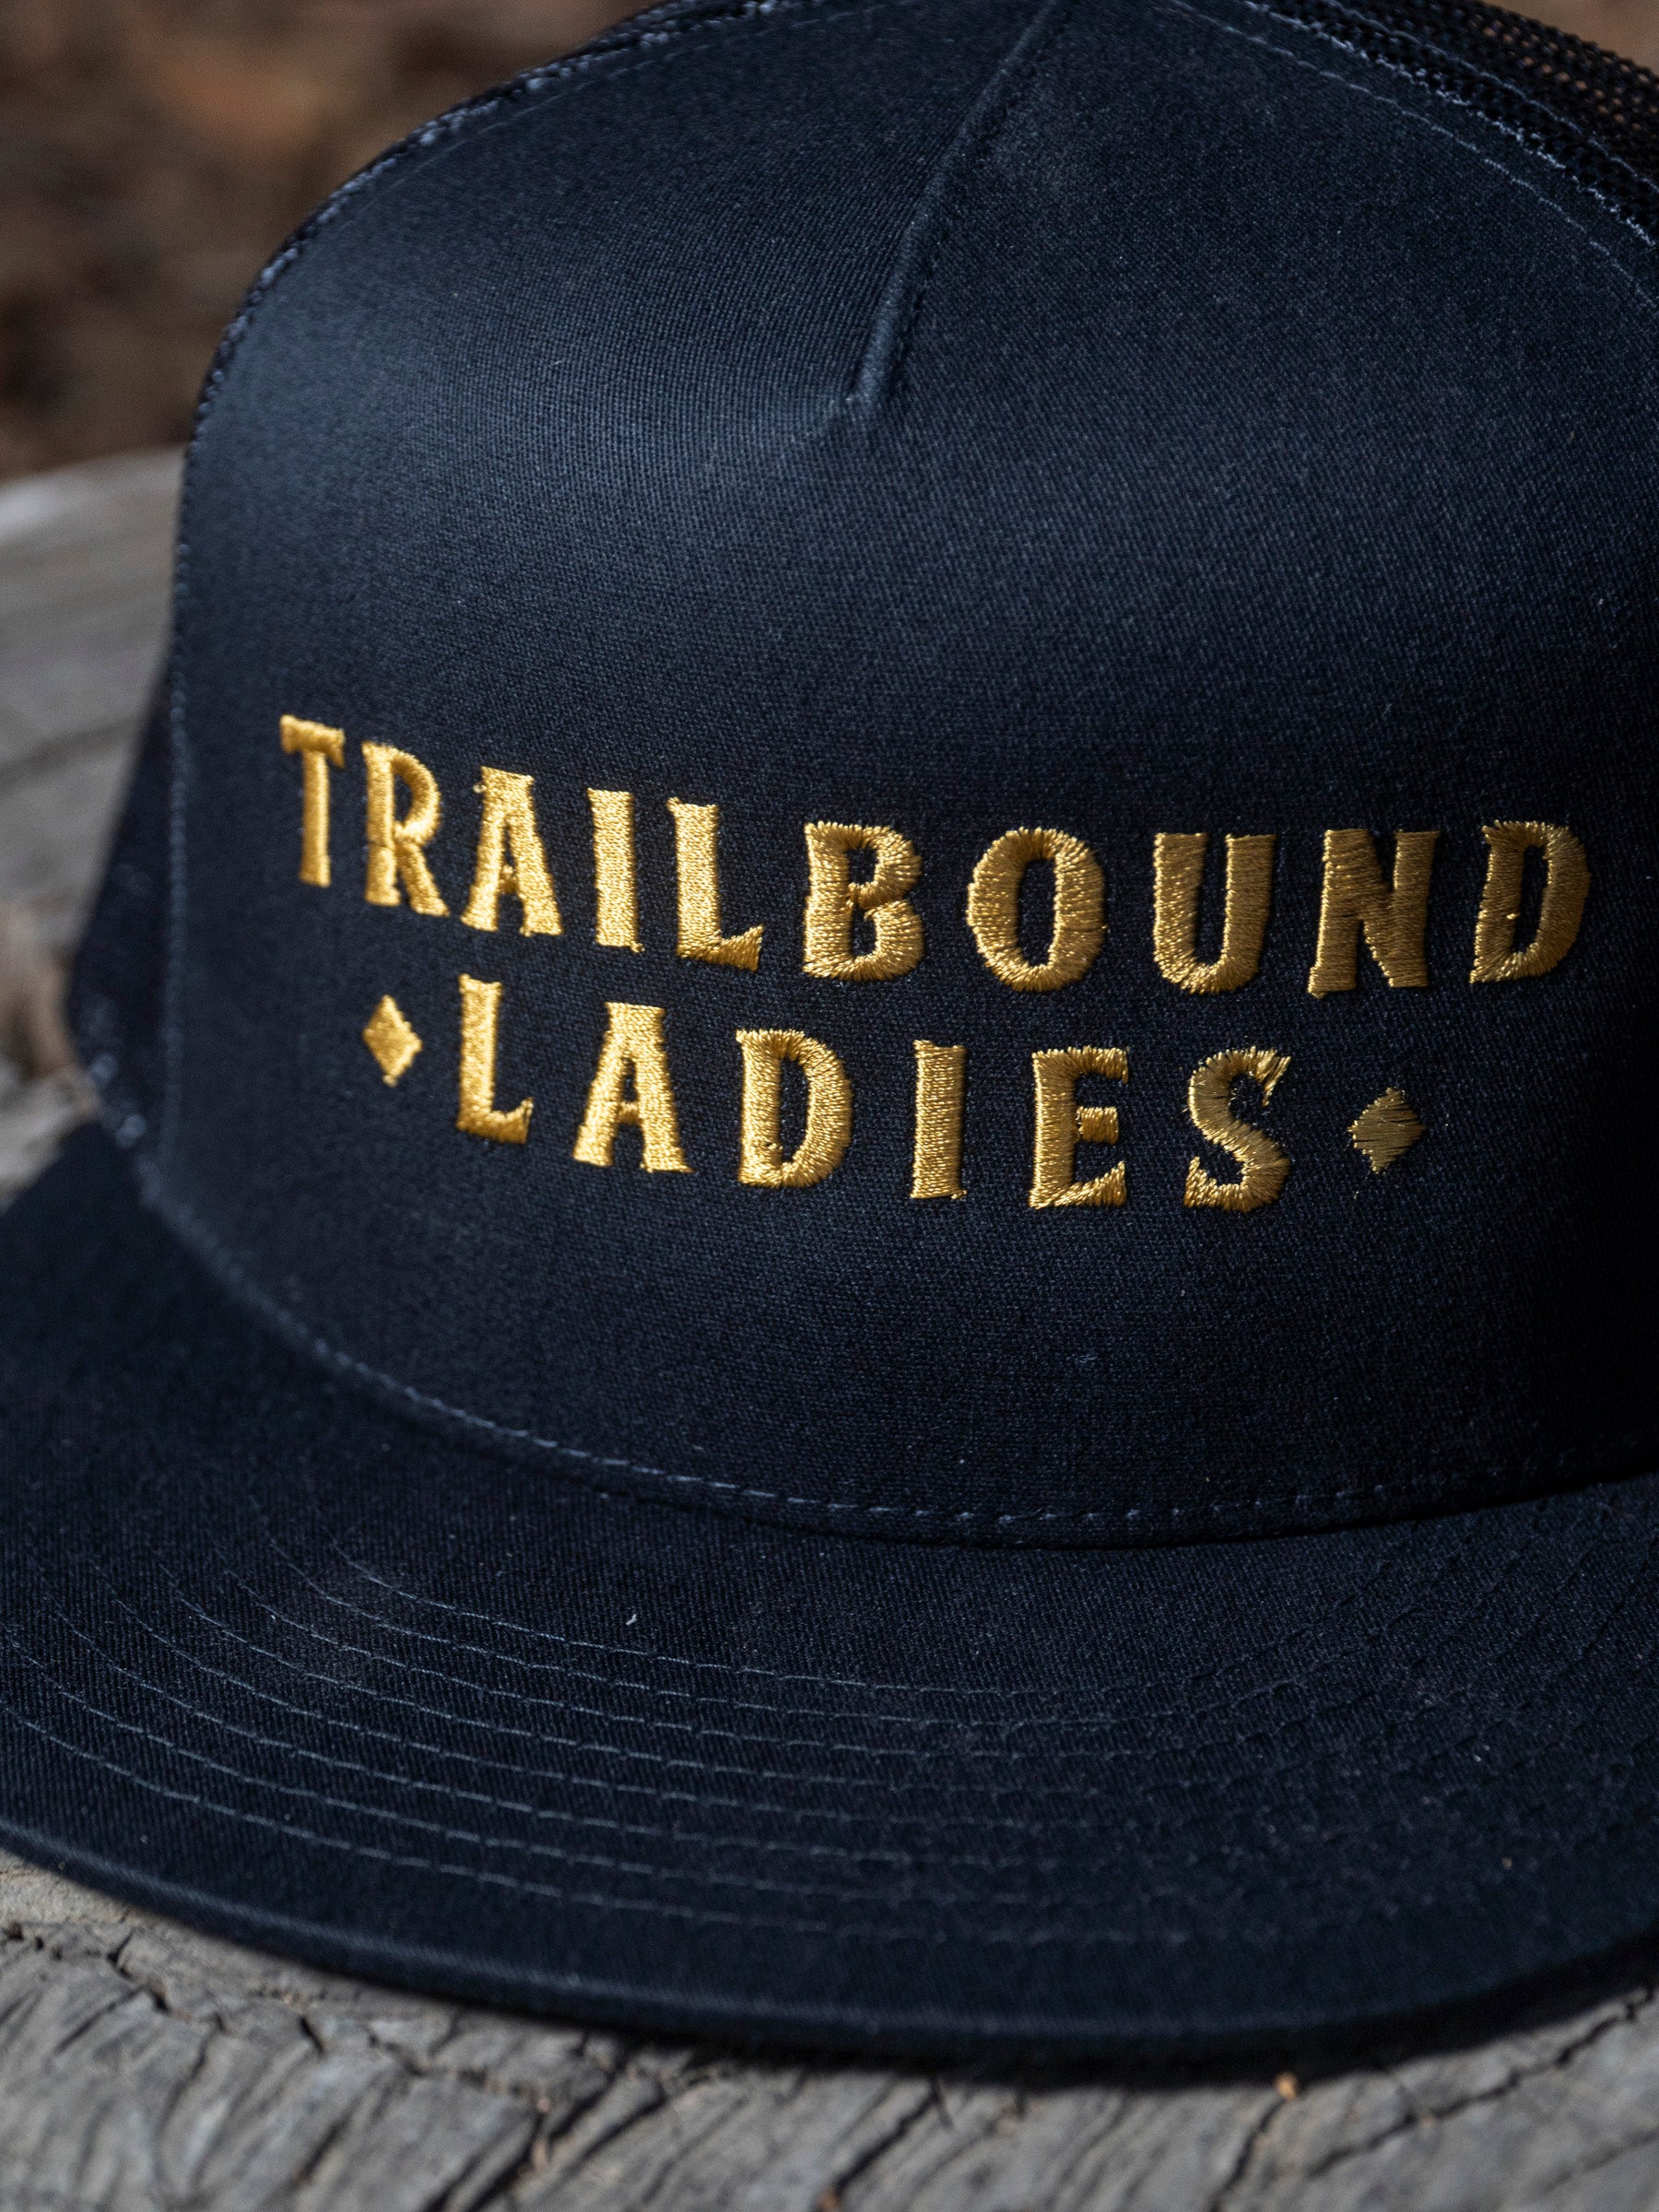 Trailbound Ladies Mesh Hat